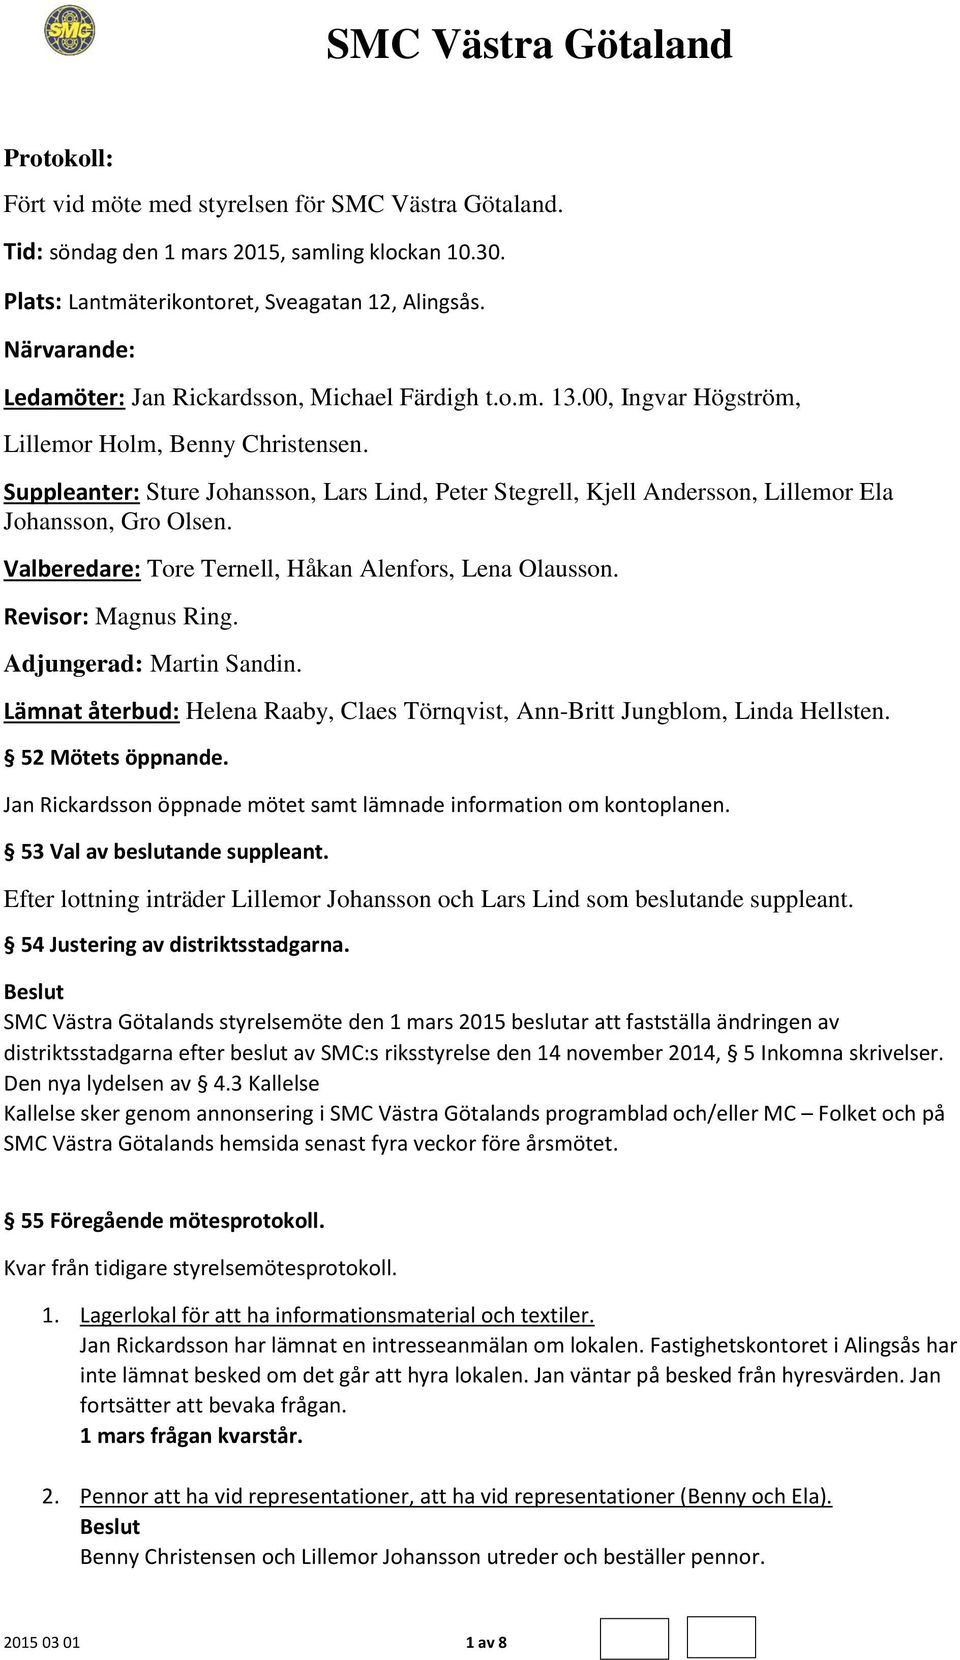 Suppleanter: Sture Johansson, Lars Lind, Peter Stegrell, Kjell Andersson, Lillemor Ela Johansson, Gro Olsen. Valberedare: Tore Ternell, Håkan Alenfors, Lena Olausson. Revisor: Magnus Ring.